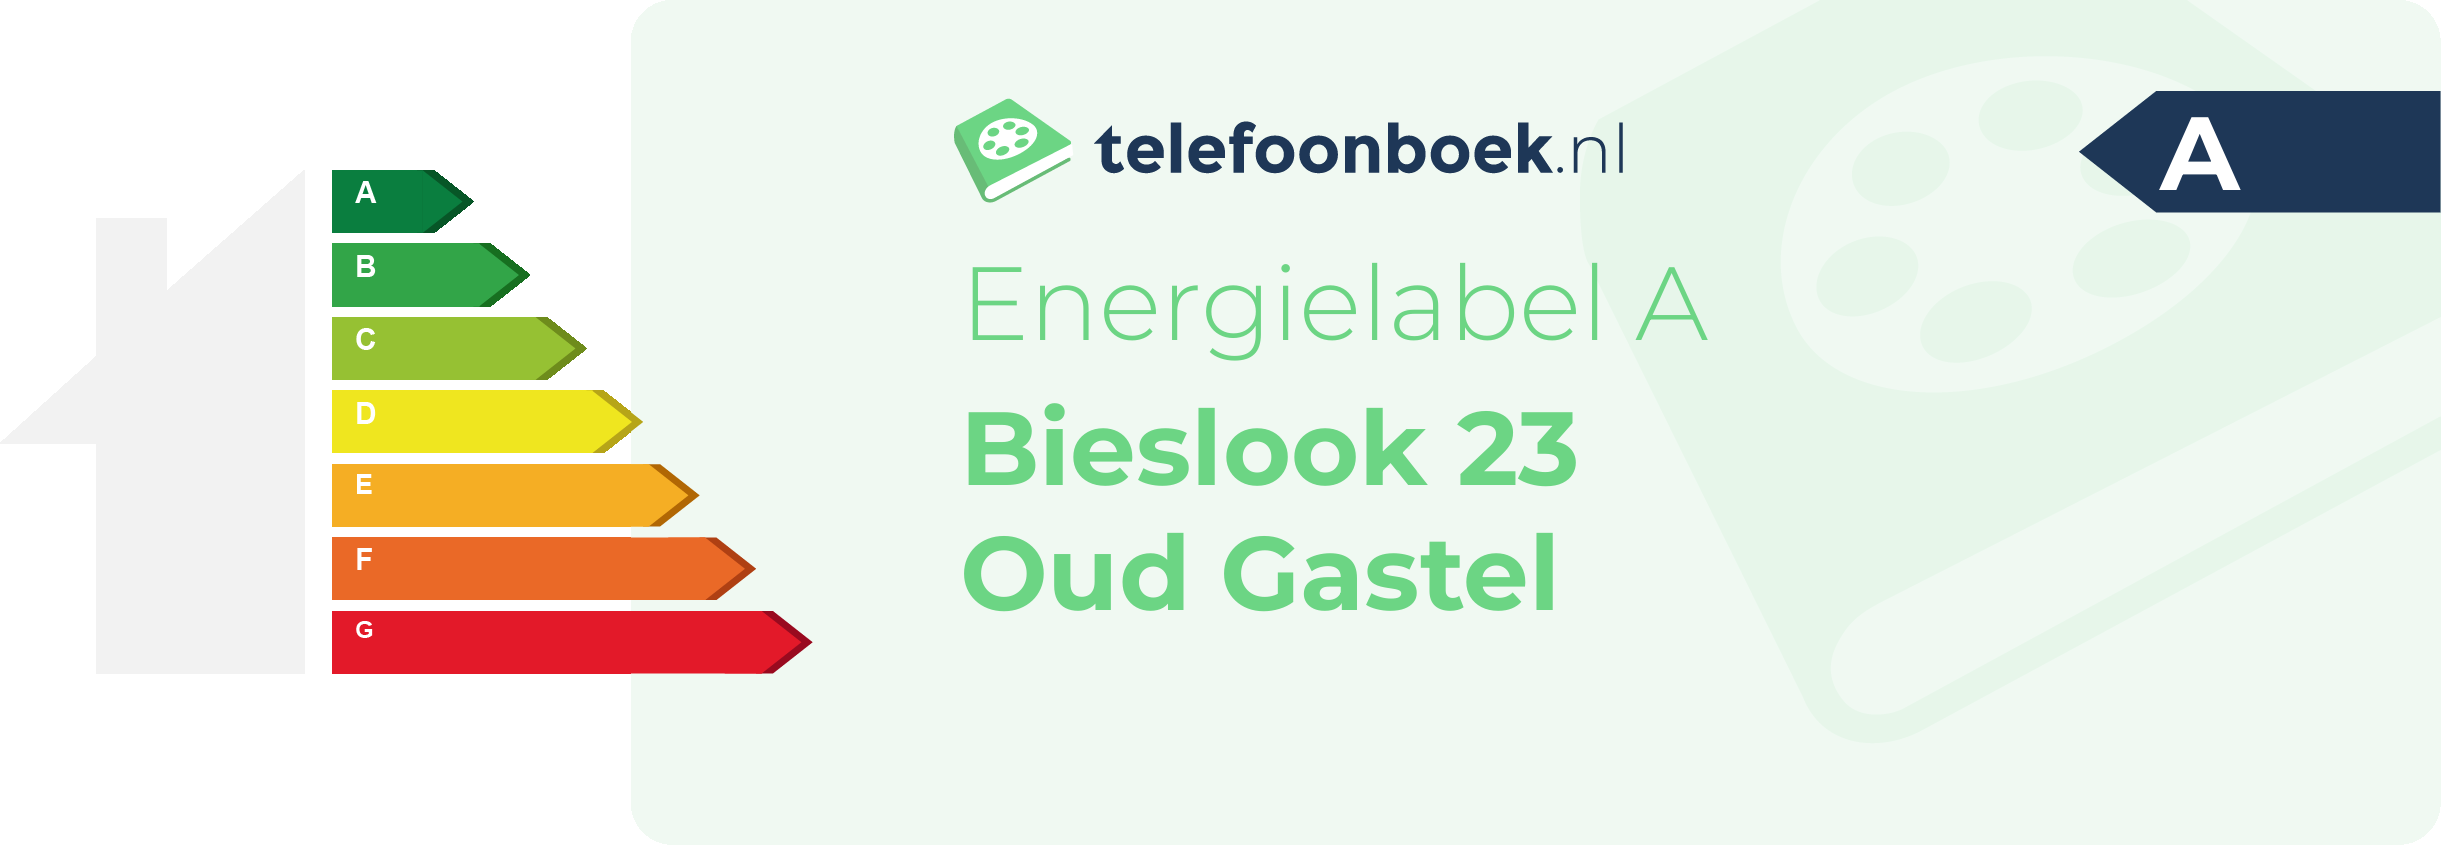 Energielabel Bieslook 23 Oud Gastel